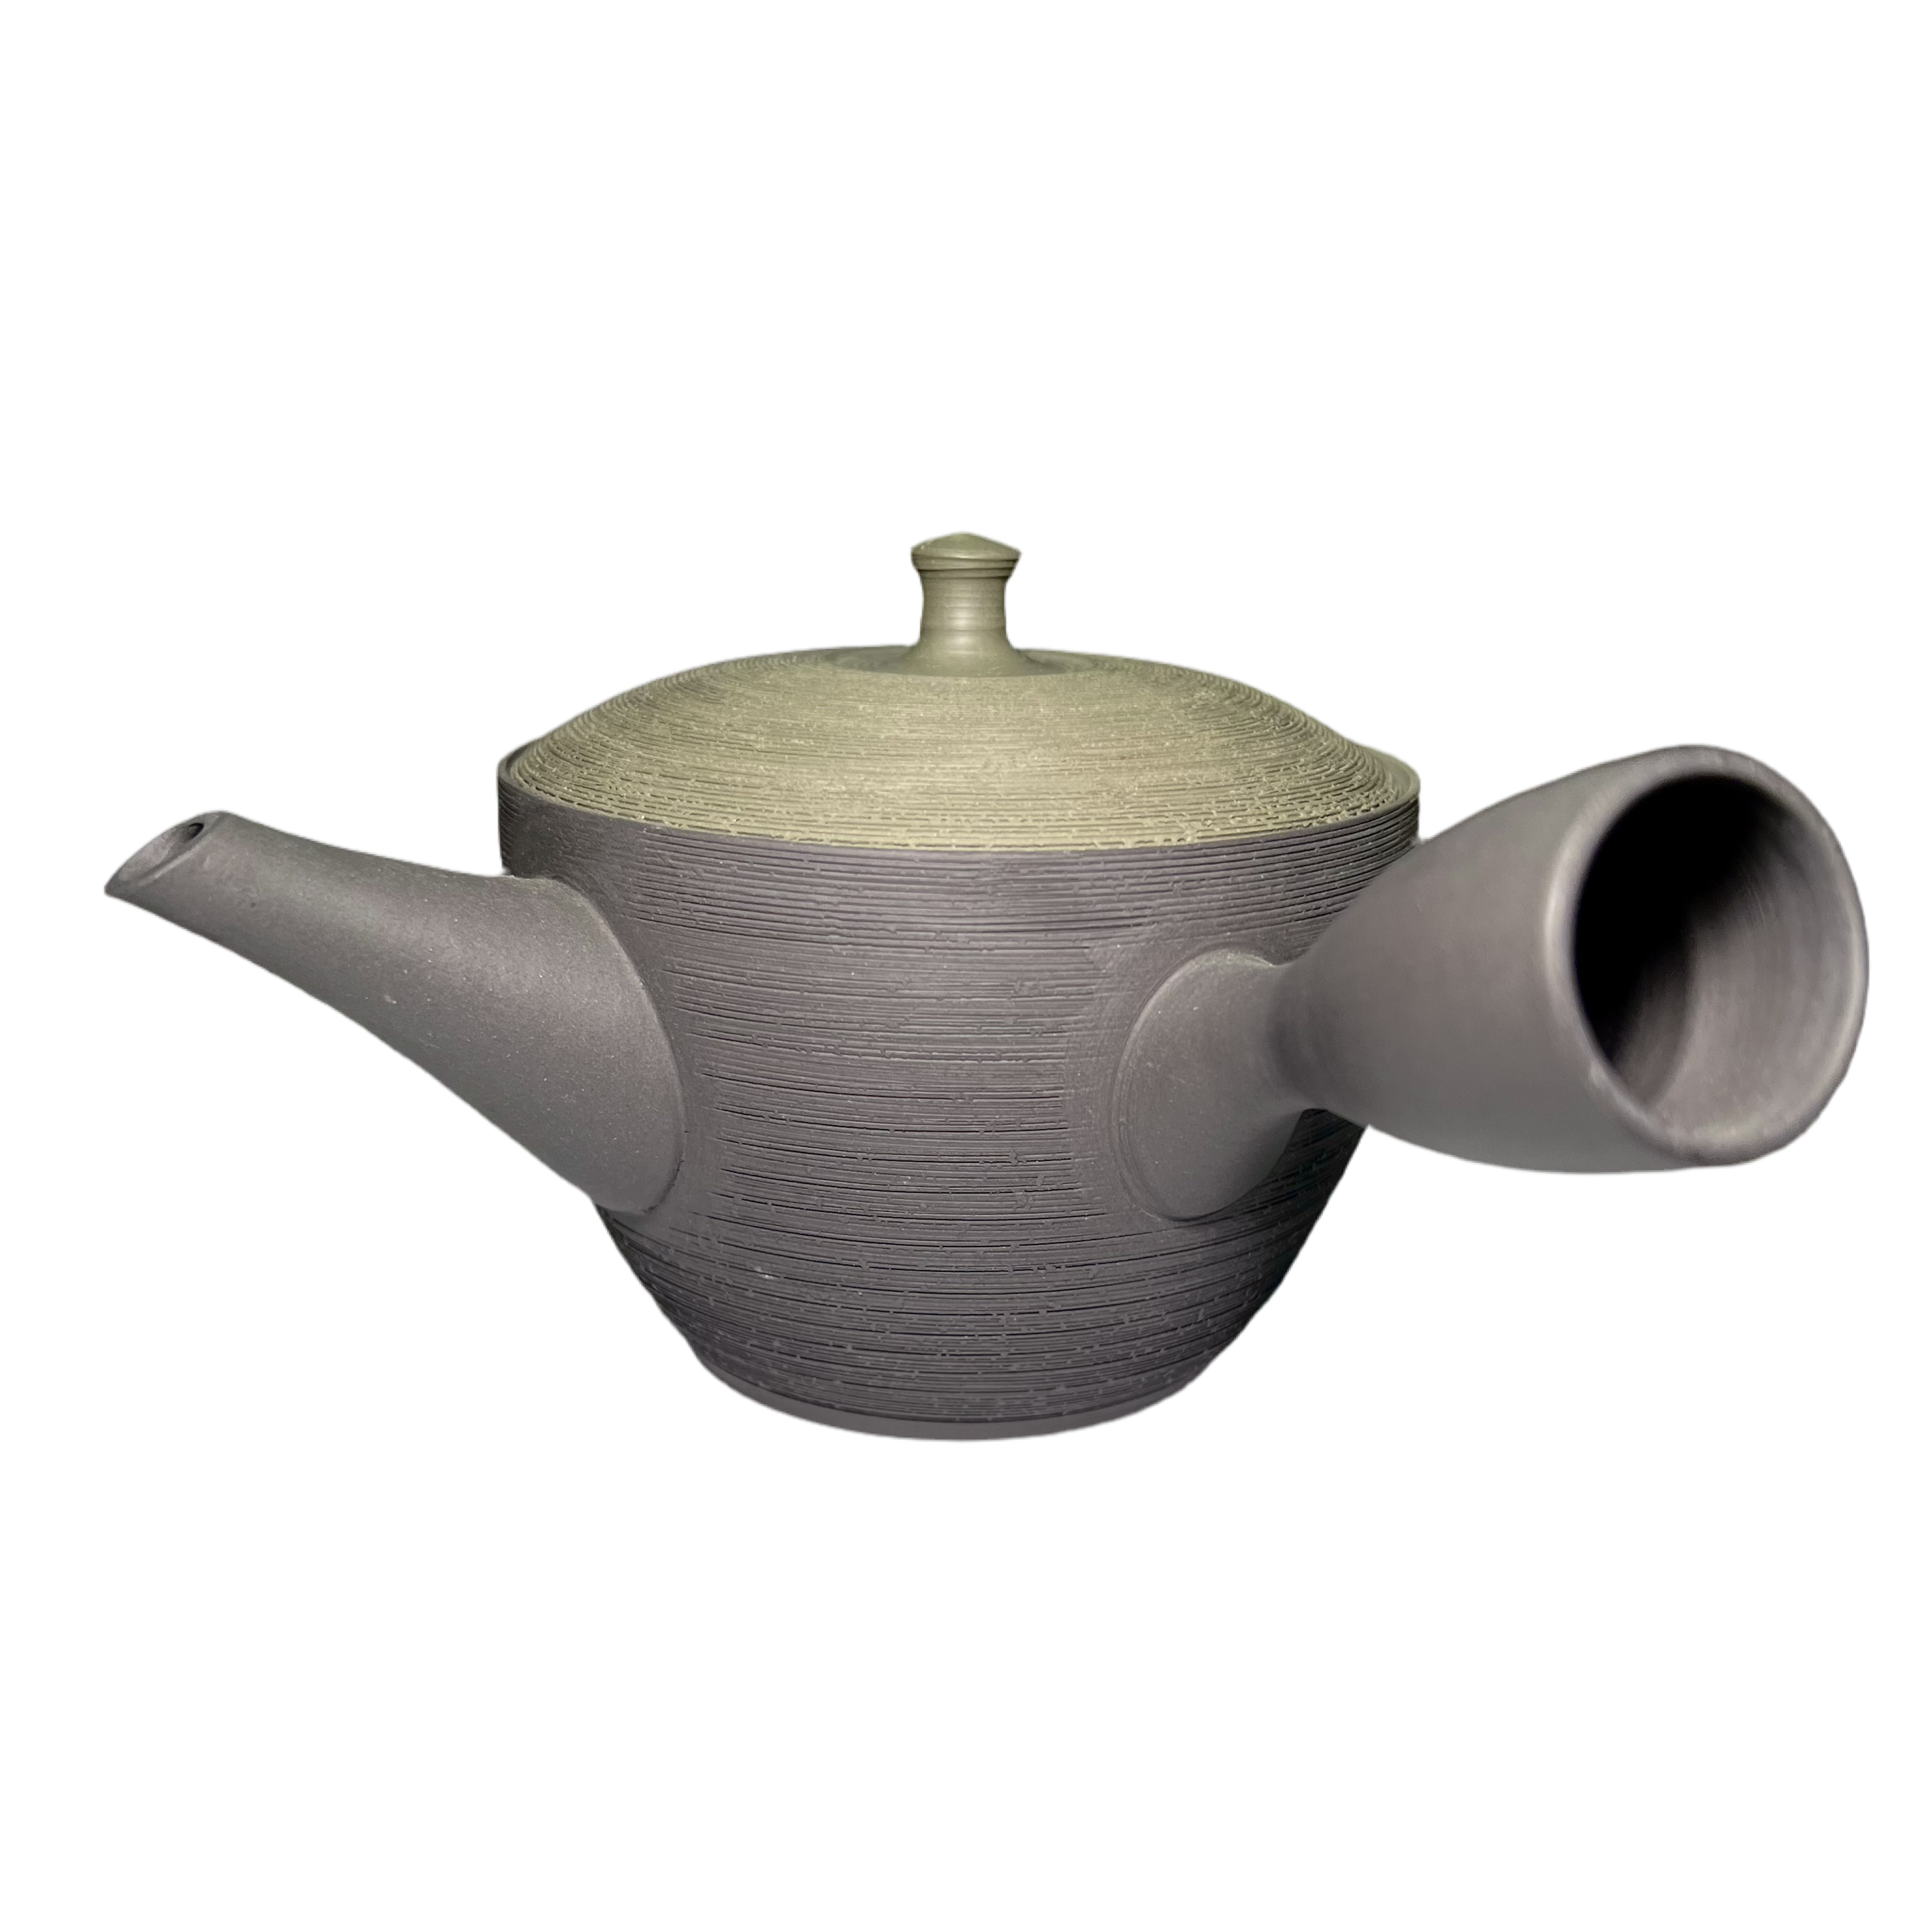 Japanese Handmade Kyusu Teapot -Matcha